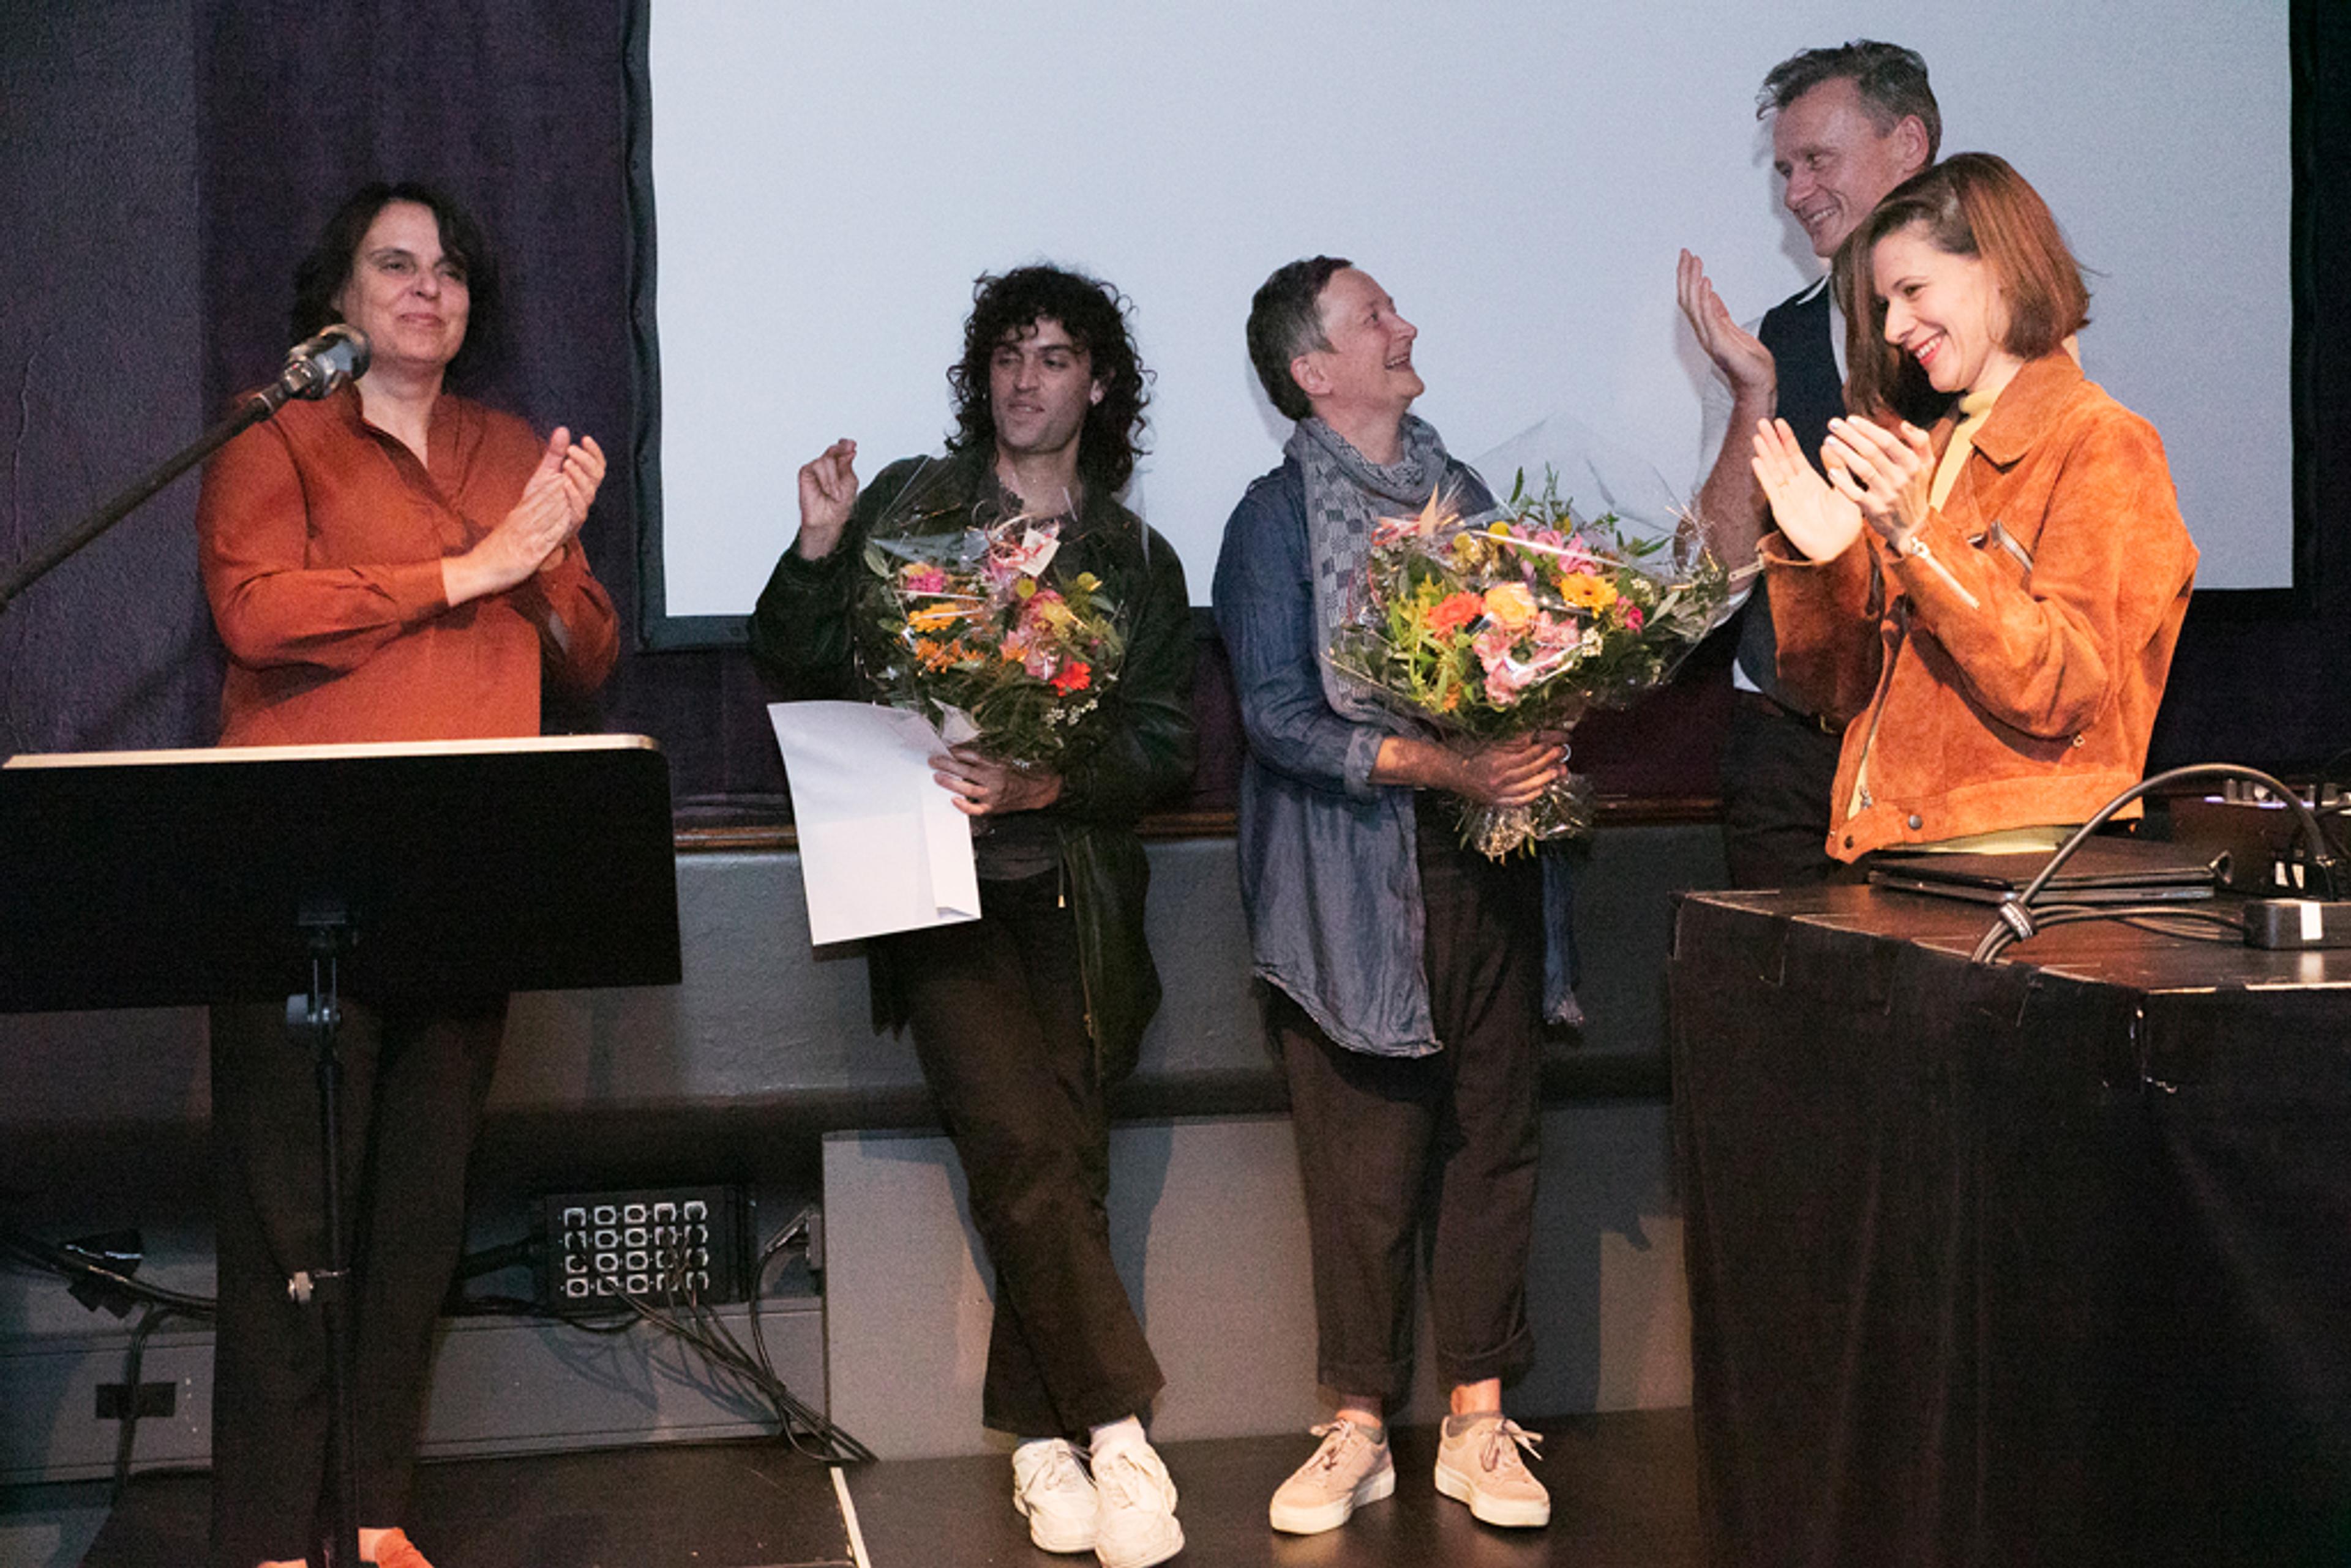 Elisabeth Ackermann, PRICE (Mathias Ringgenberg), Judith Huber, Yan Duyvendack, Sophie Jung / Photo credit: Emmanuelle Bayart, Swiss Performance Art Award 2018